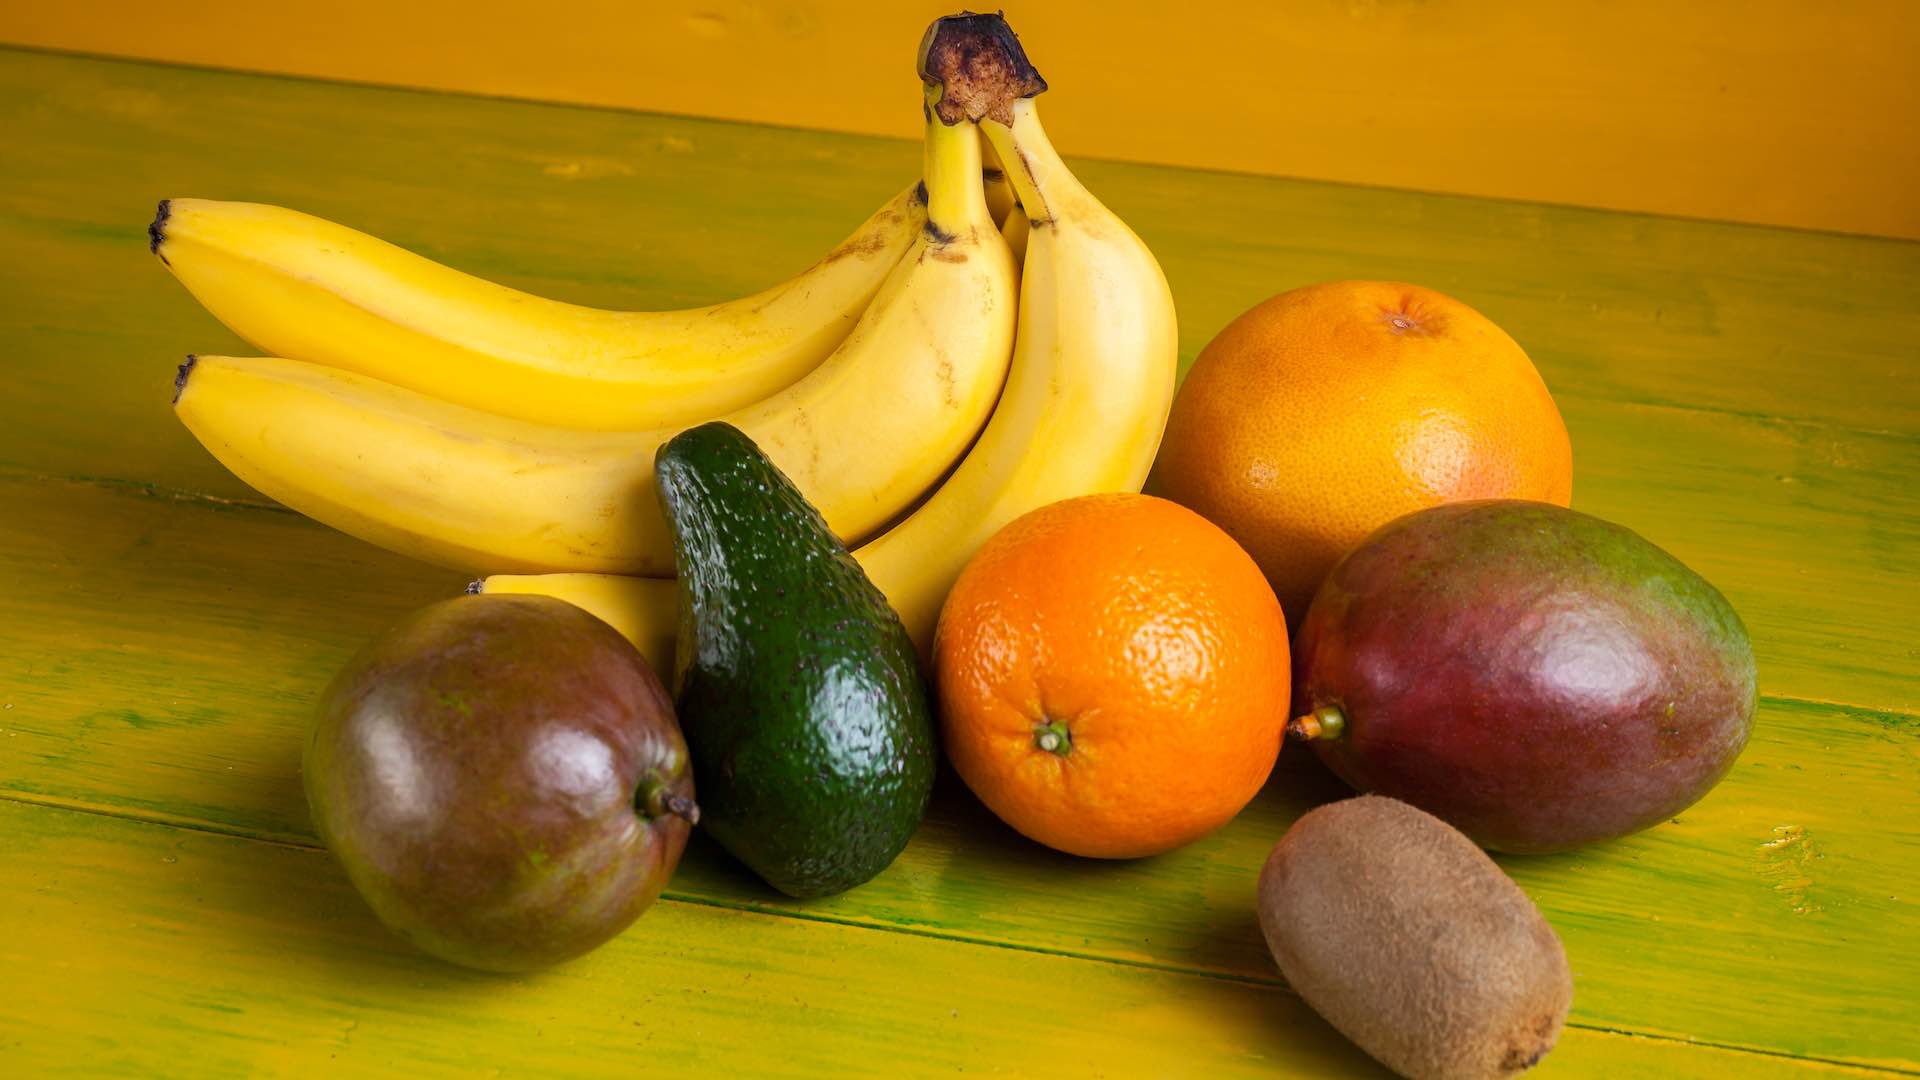 ذیابیطس کے مریضوں کے لئے پھلوں کے استعمال کے بارے میں خرافات کو ختم کرنا